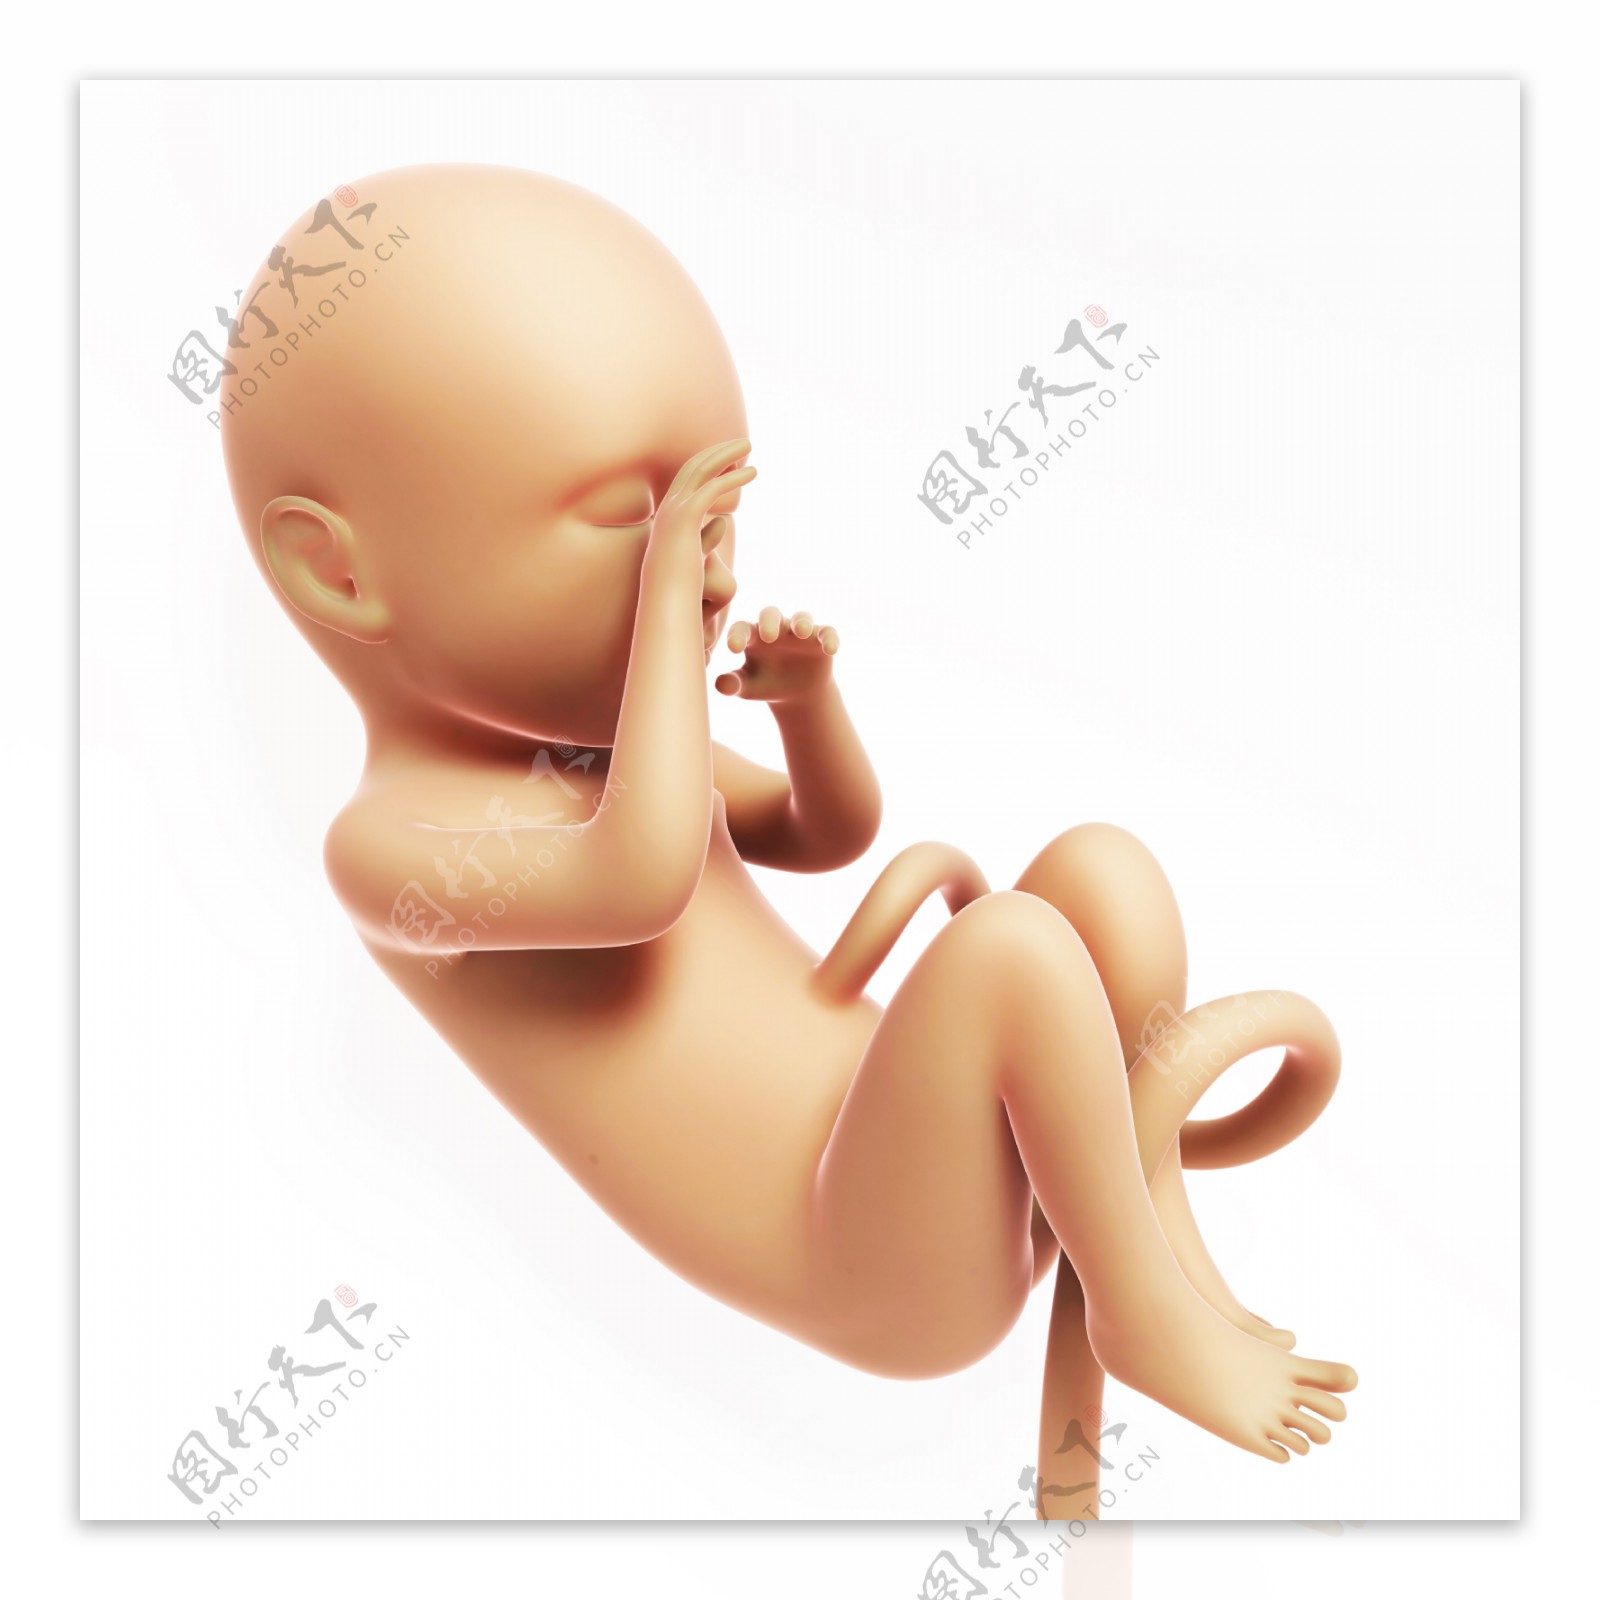 成形的胎儿图片